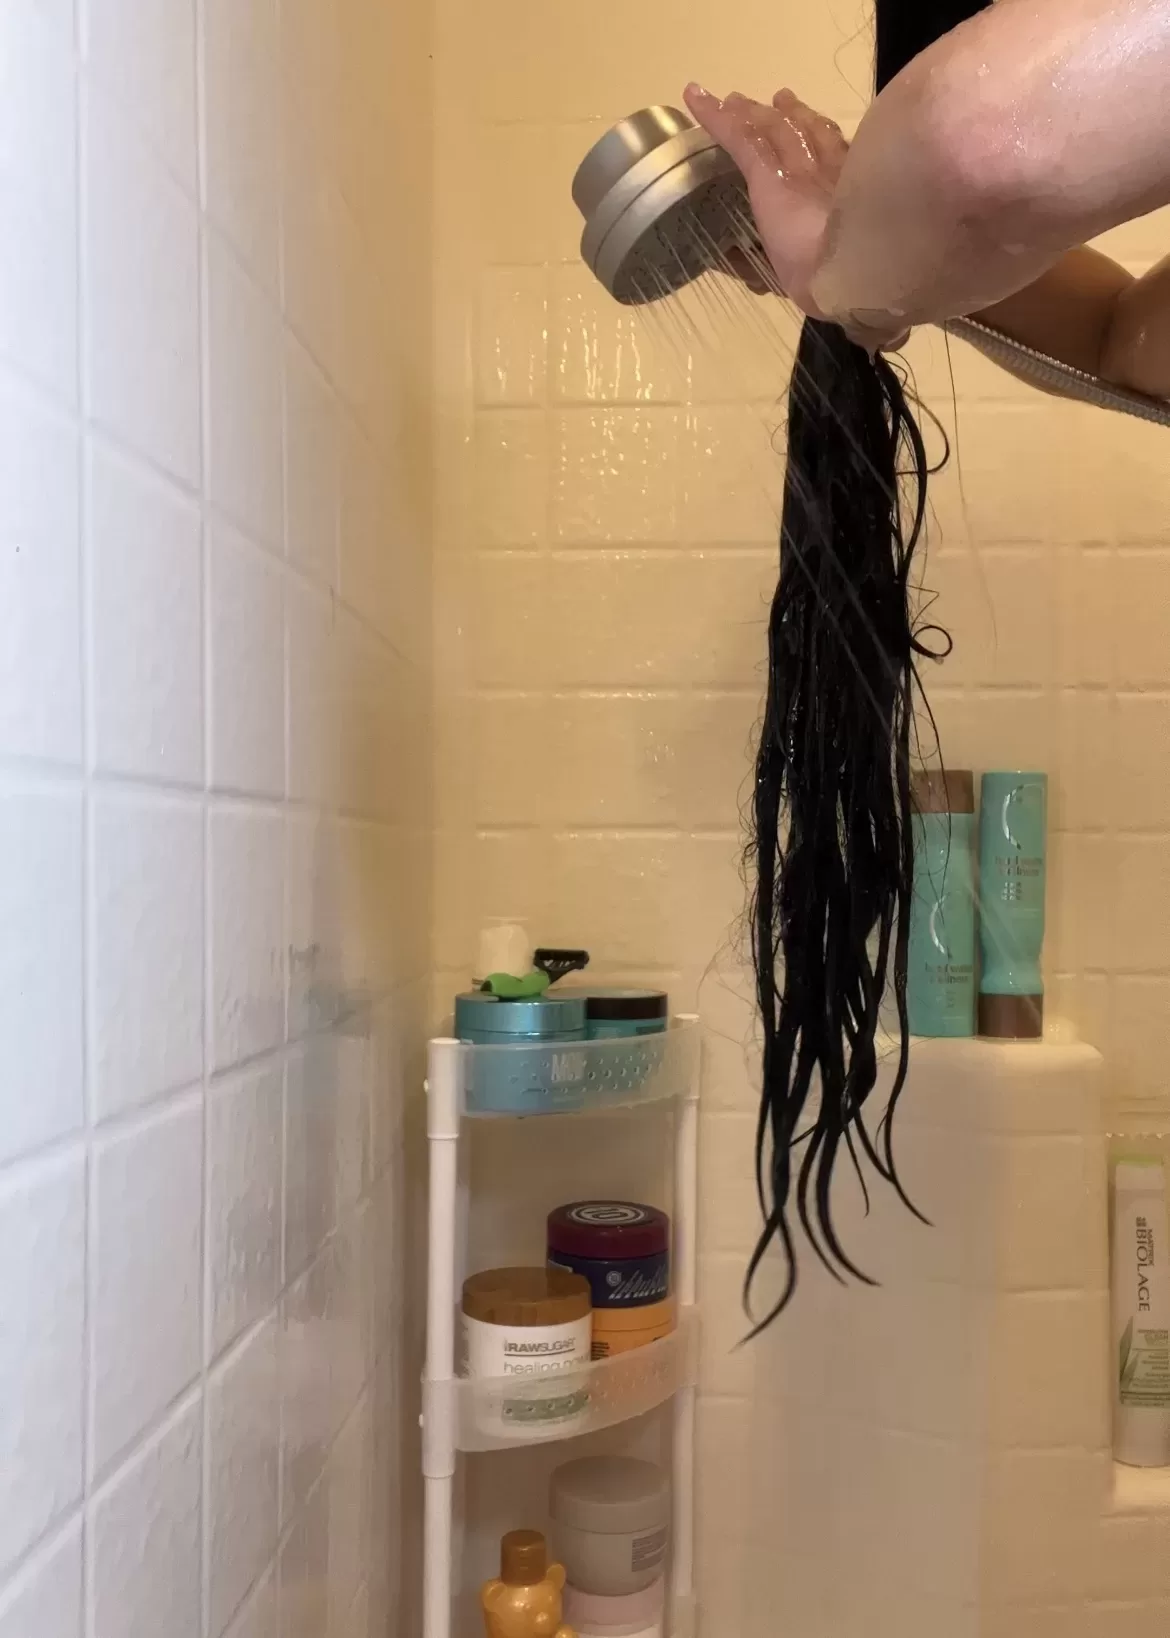 long hair rinsing in the shower